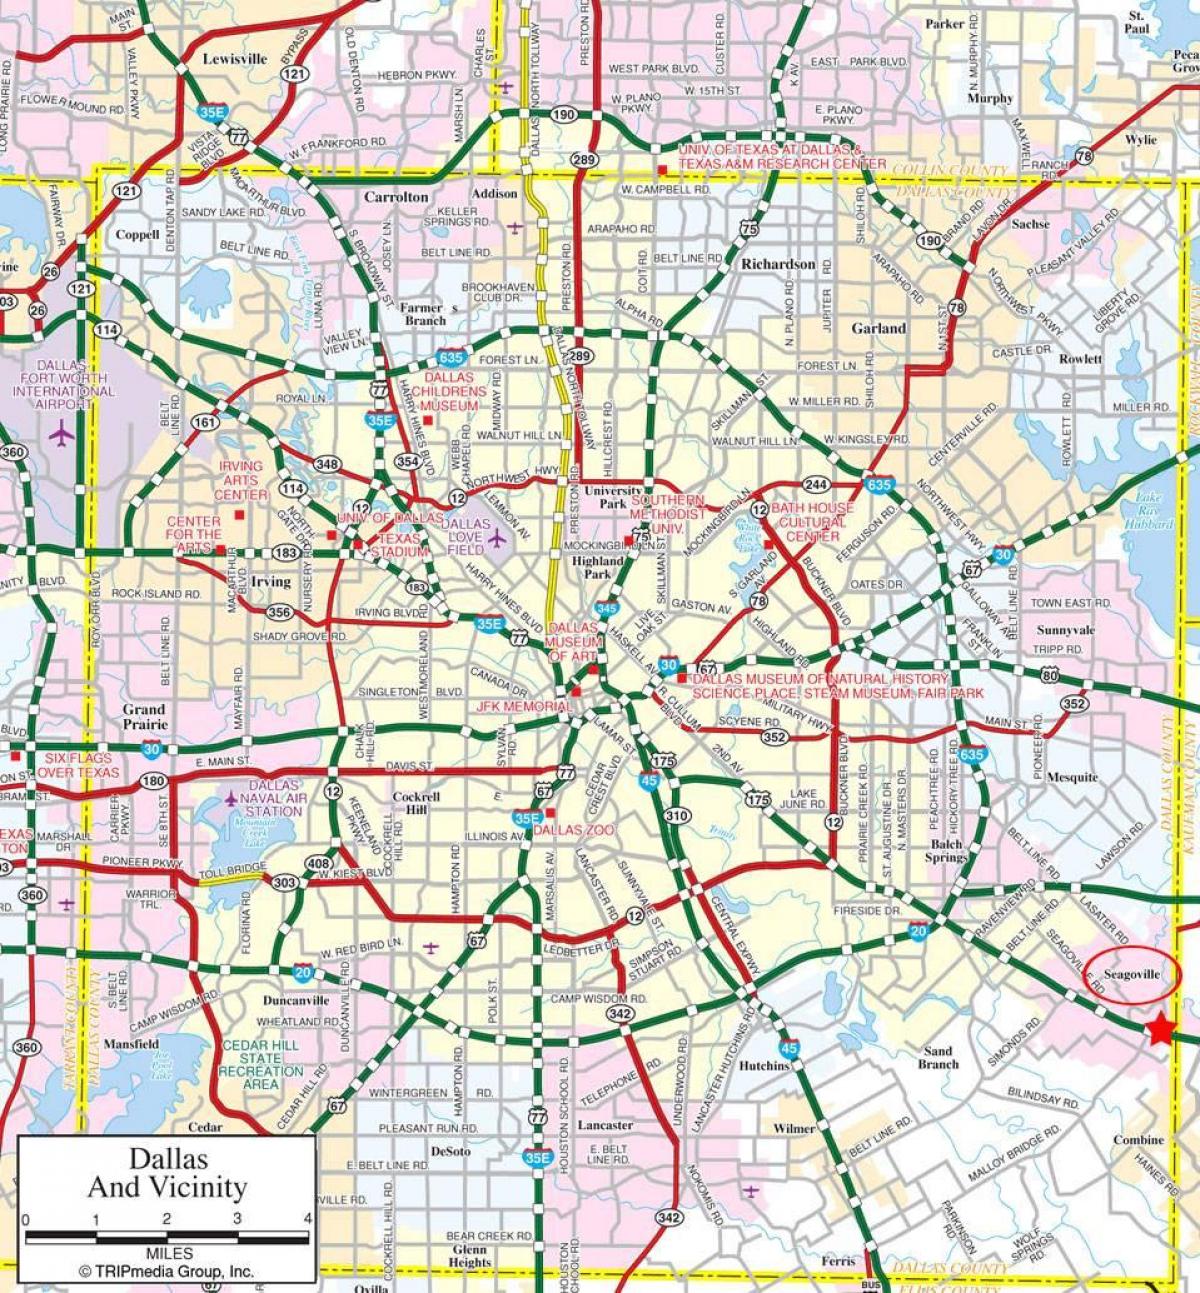 ڈلاس شہر کا نقشہ